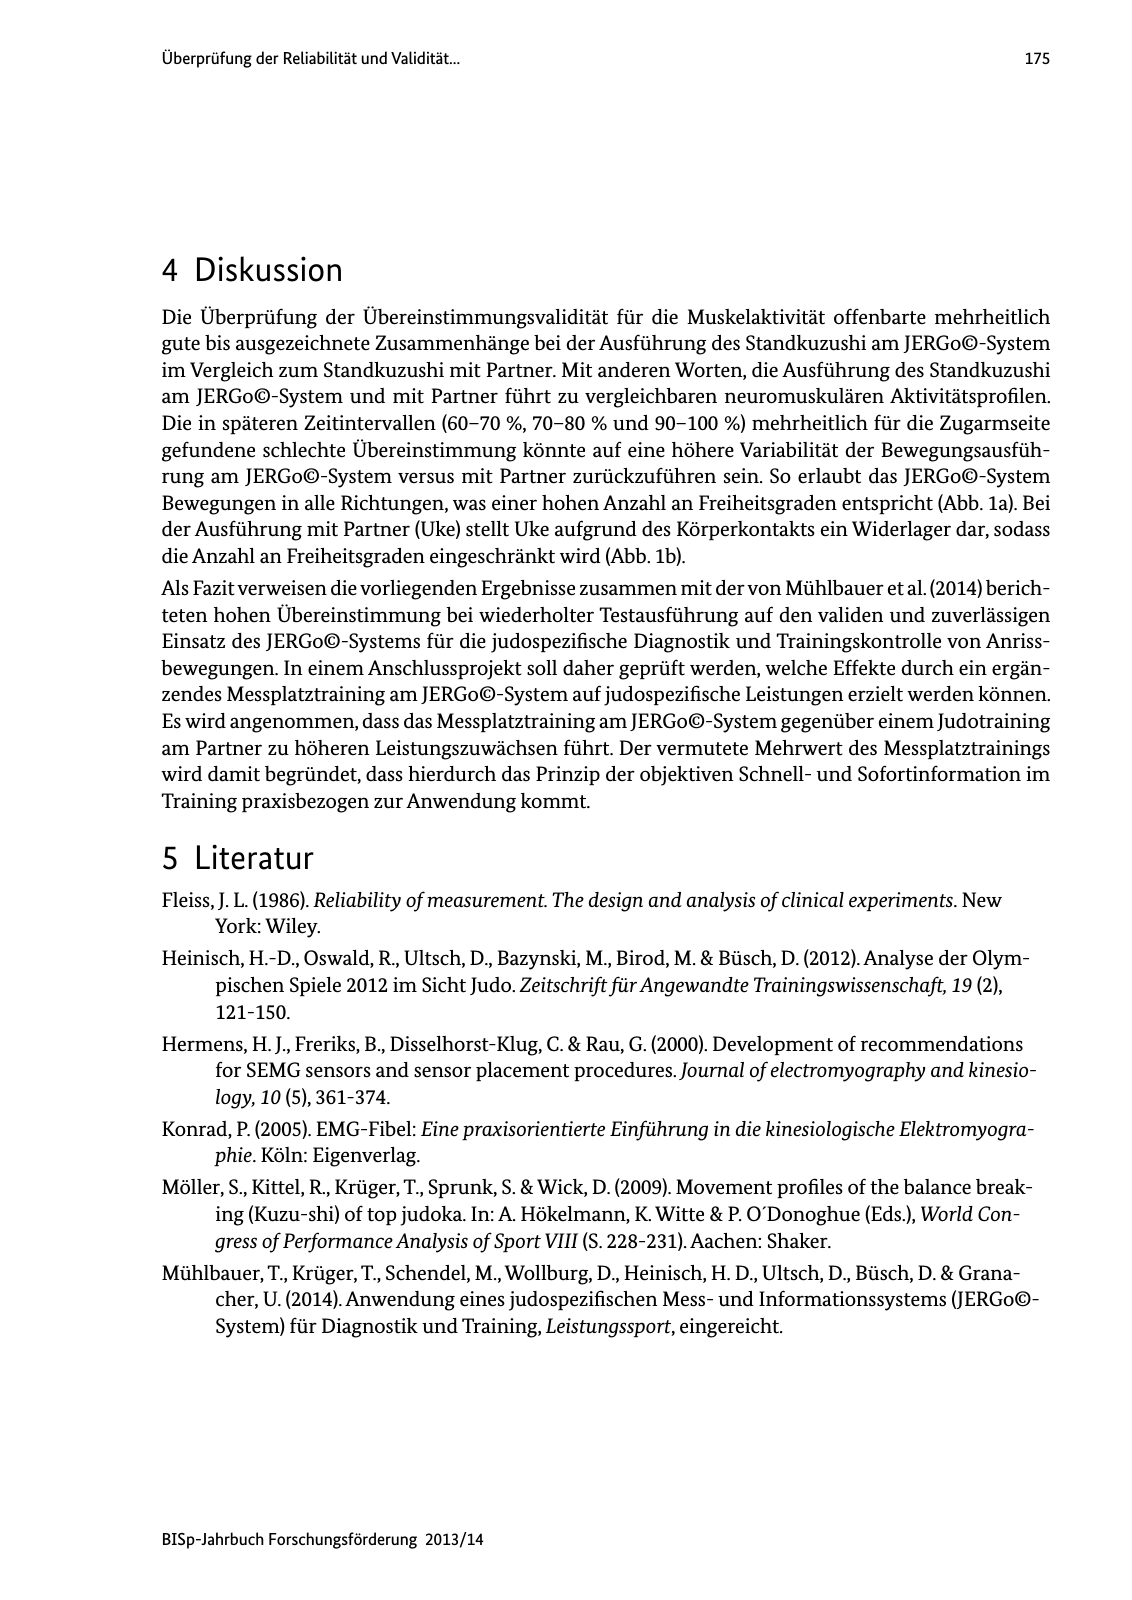 Vorschau BISp-Jahrbuch Forschungsförderung 2013/14 Seite 176